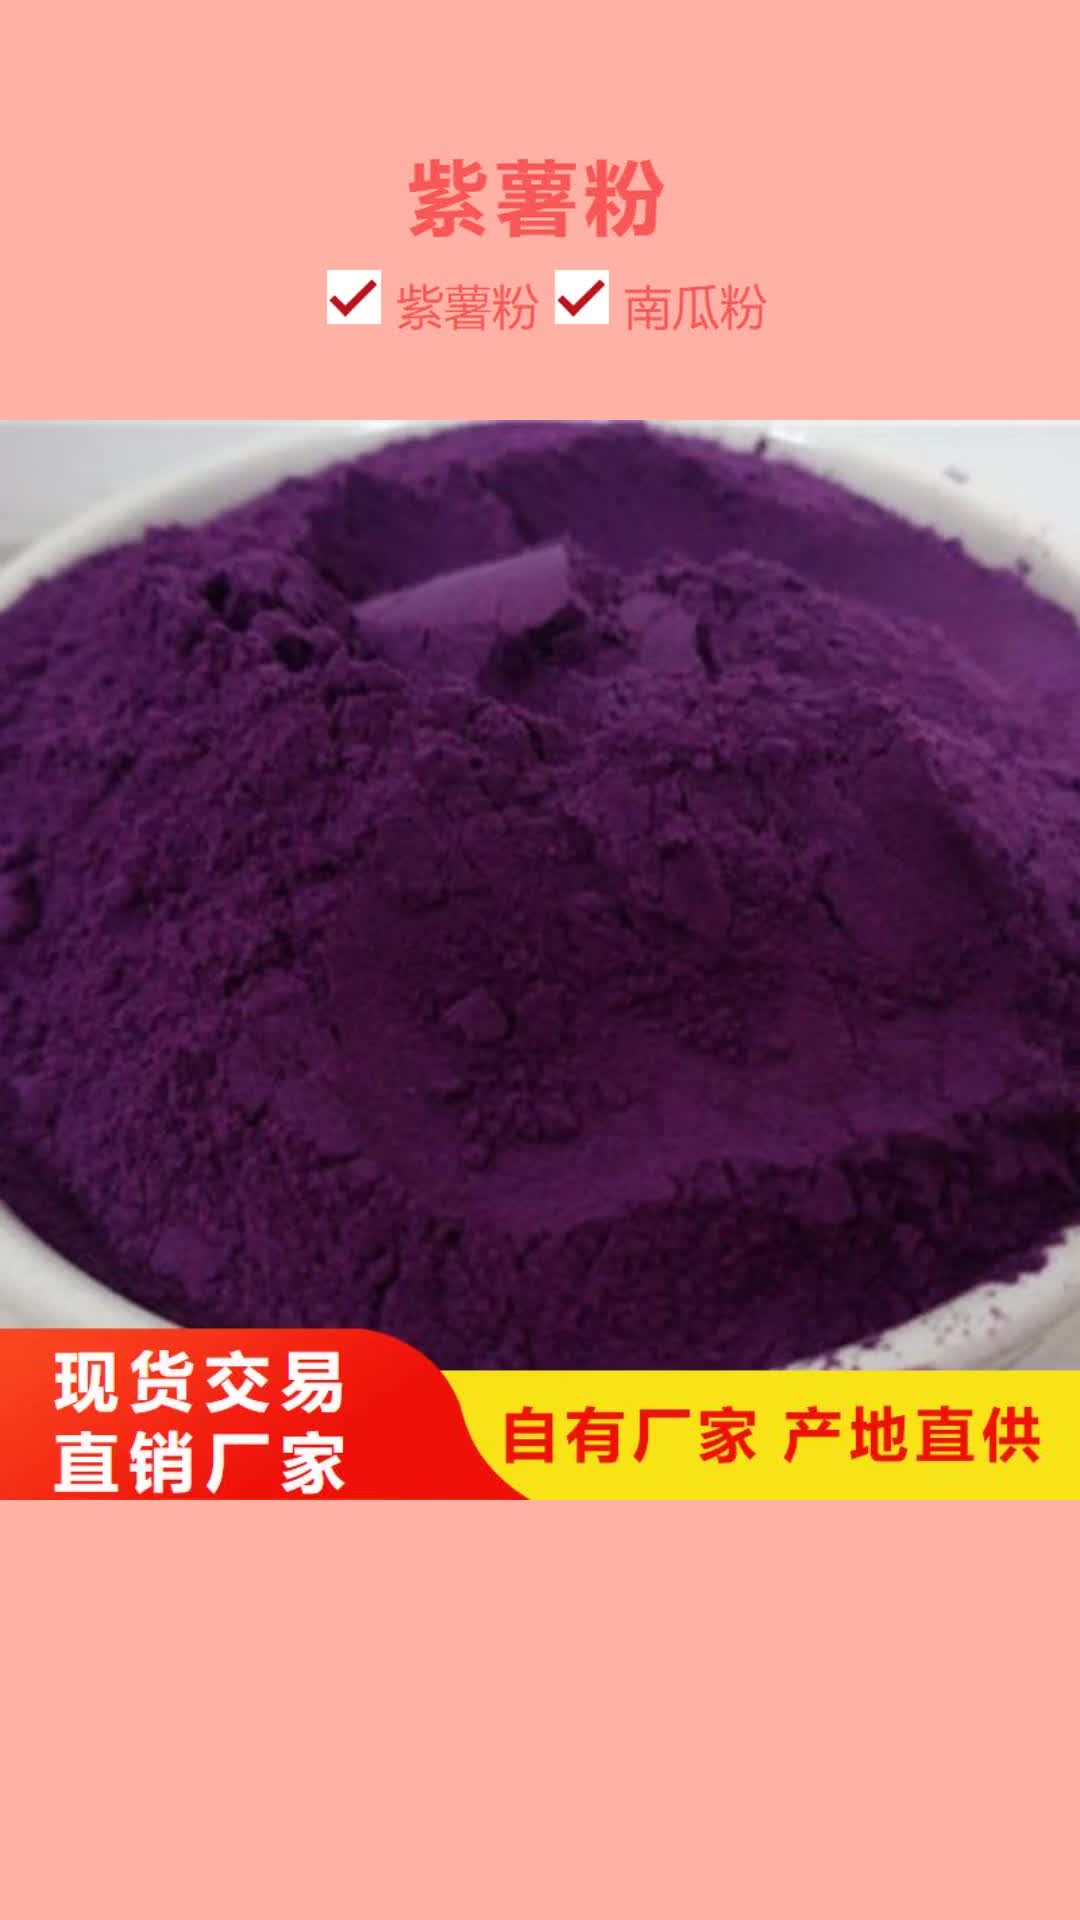 佳木斯 紫薯粉,【灵芝孢子粉】价格公道合理